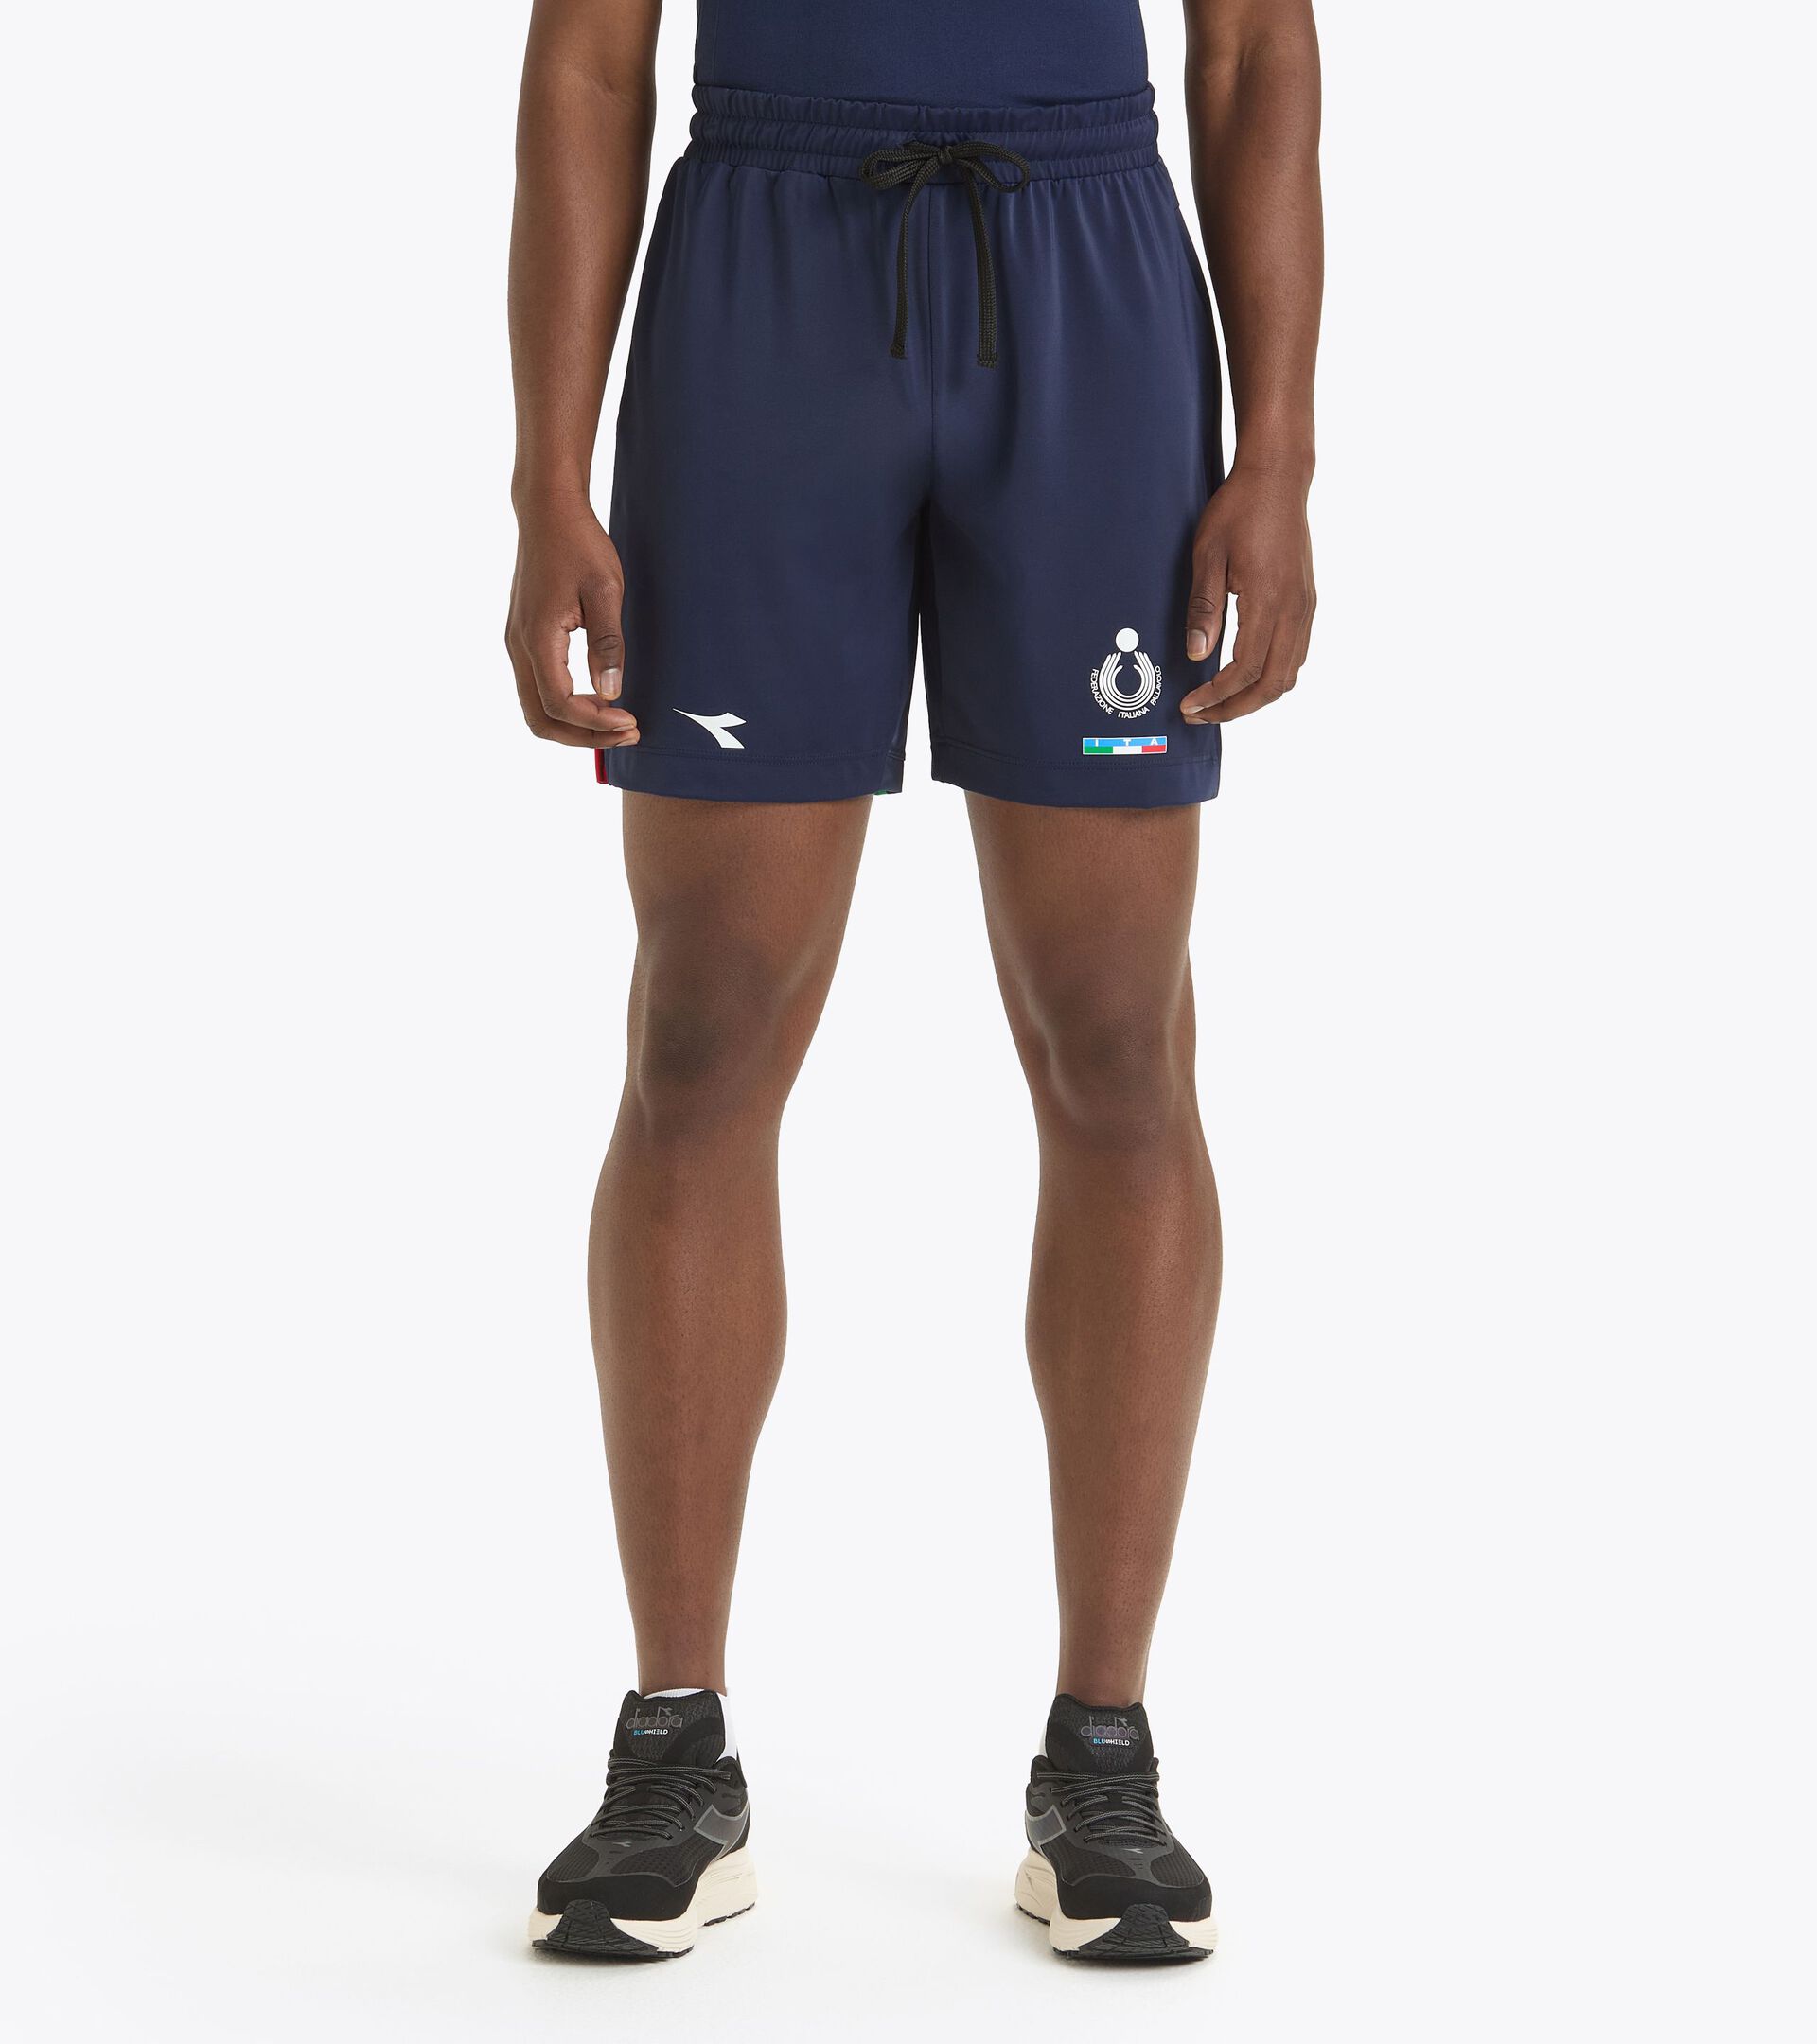 Pantalones cortos de competición para hombre - Selección Italiana de Vóley Playa SHORT GARA UOMO BV ITALIA AZUL CHAQUETON - Diadora